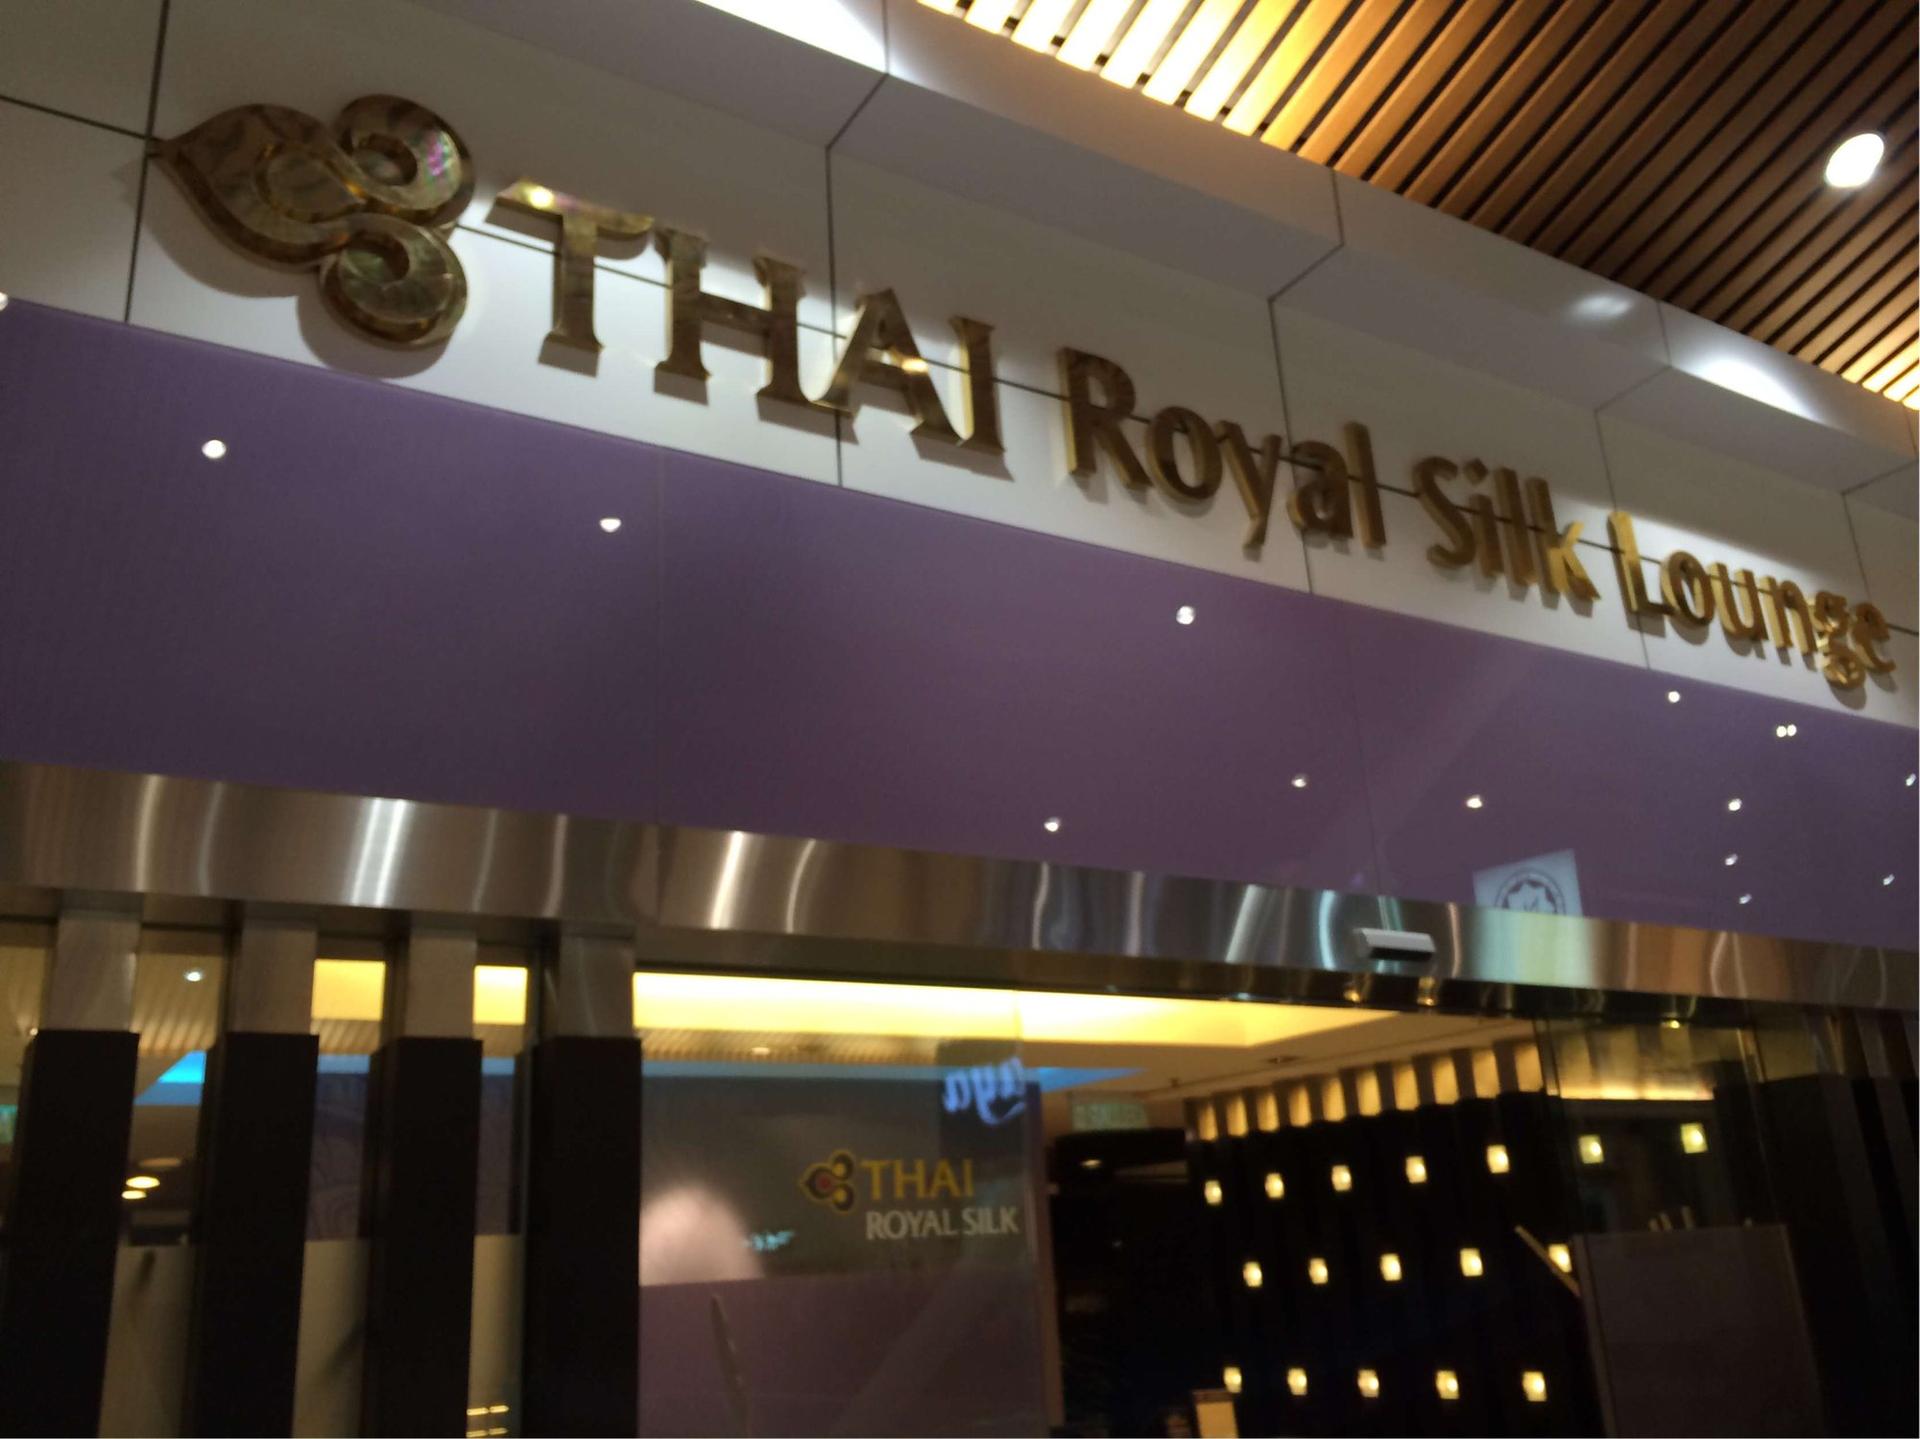 Thai Airways Royal Silk Lounge image 2 of 12